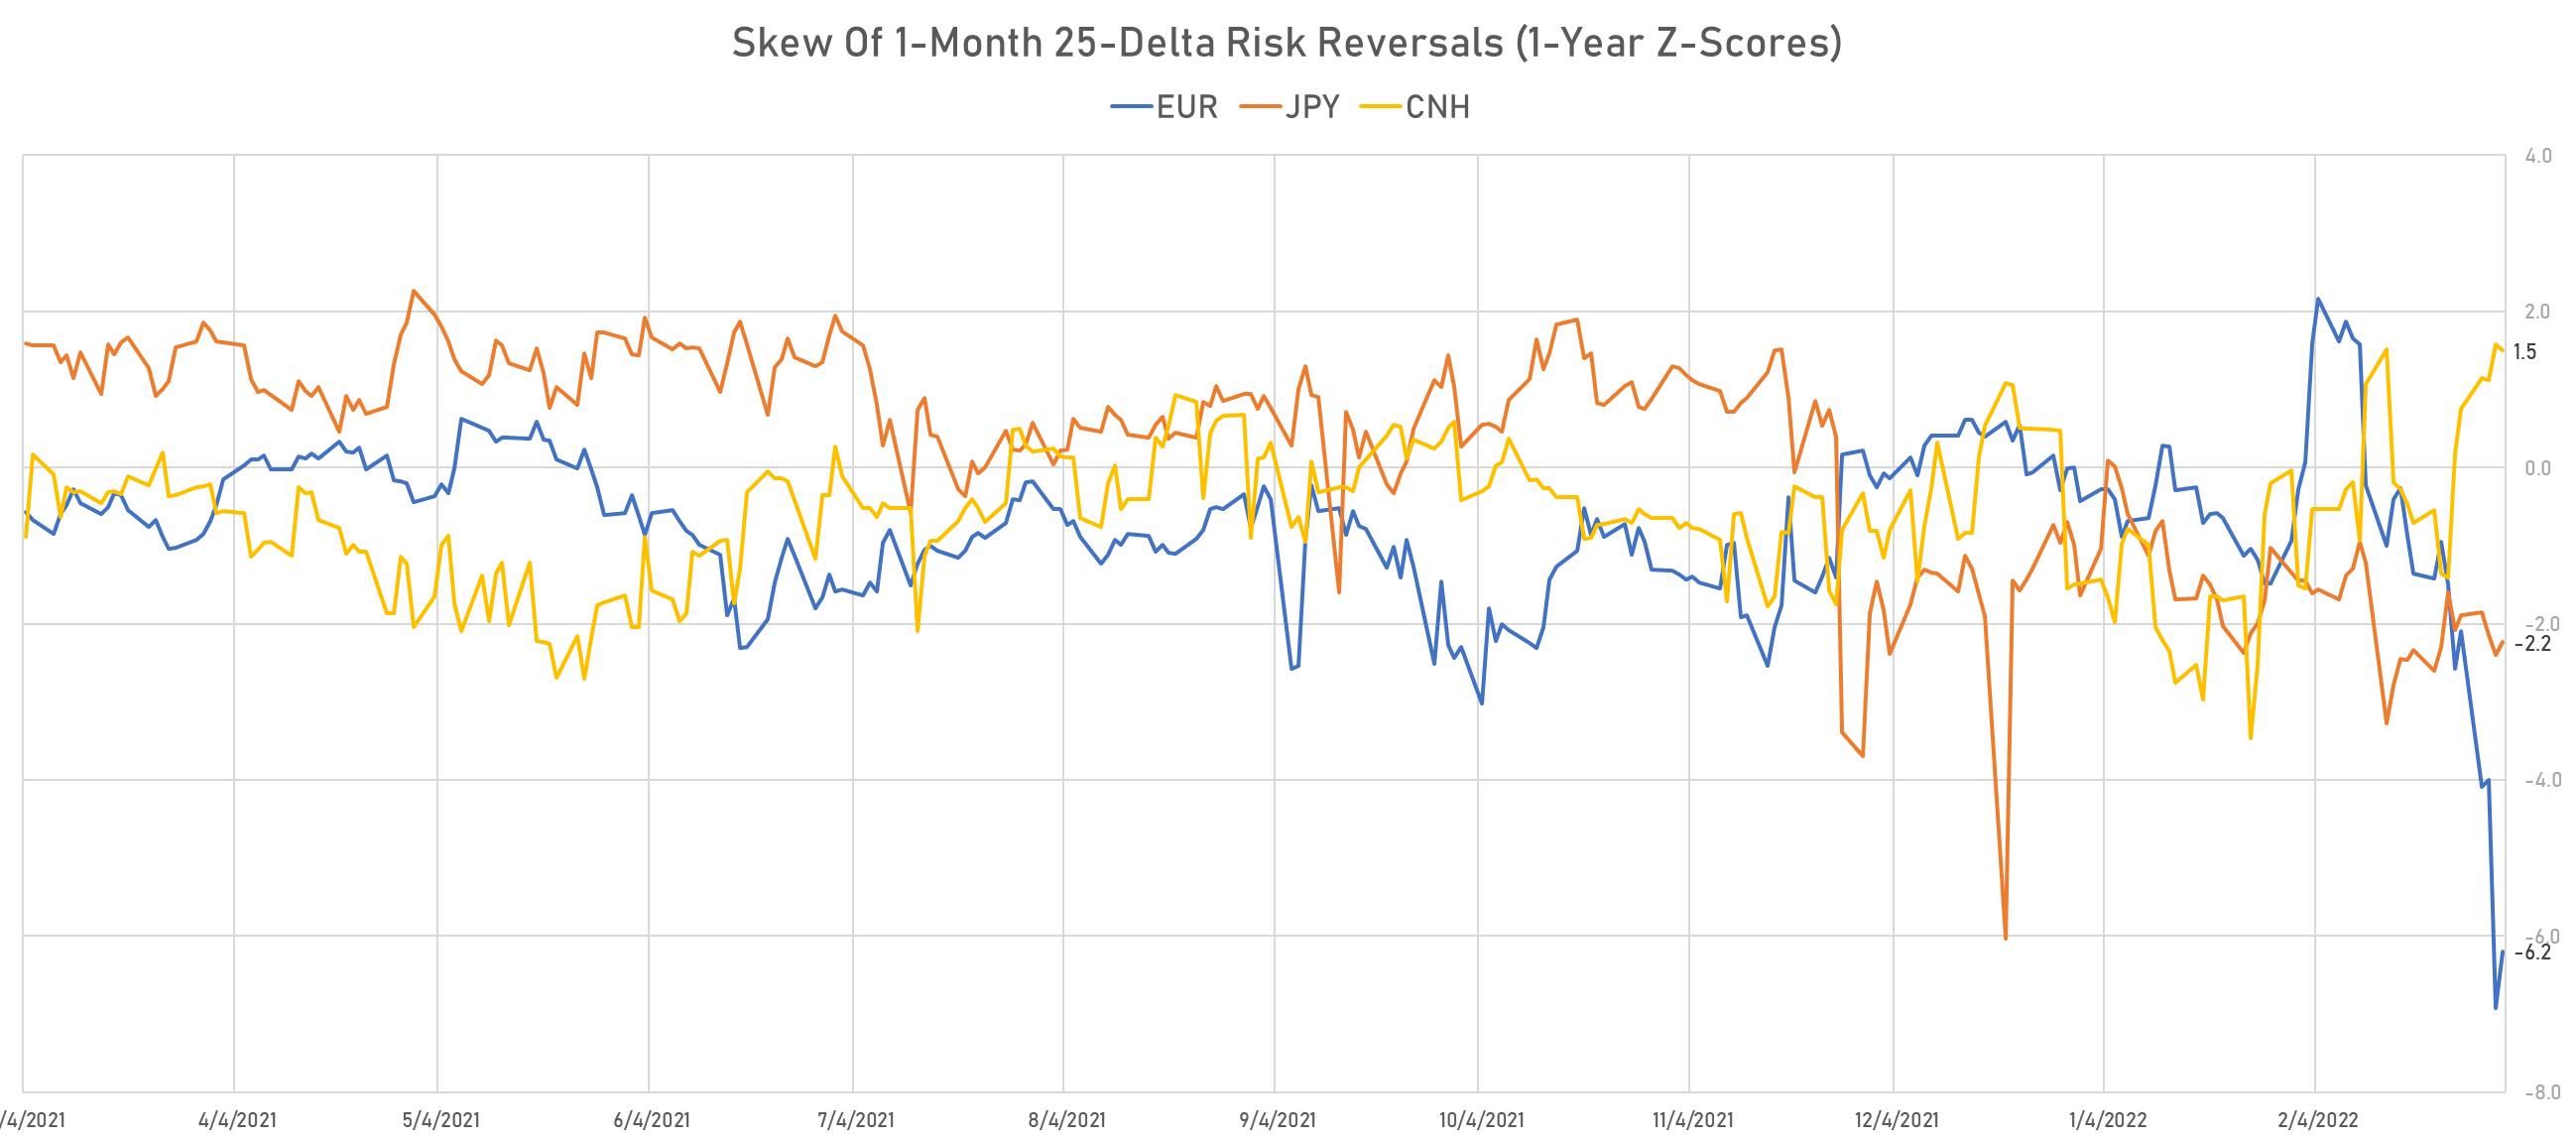 EUR CNH JPY Skew in 1-Month 25-Delta Risk Reversals | Sources: phipost.com, Refinitiv data